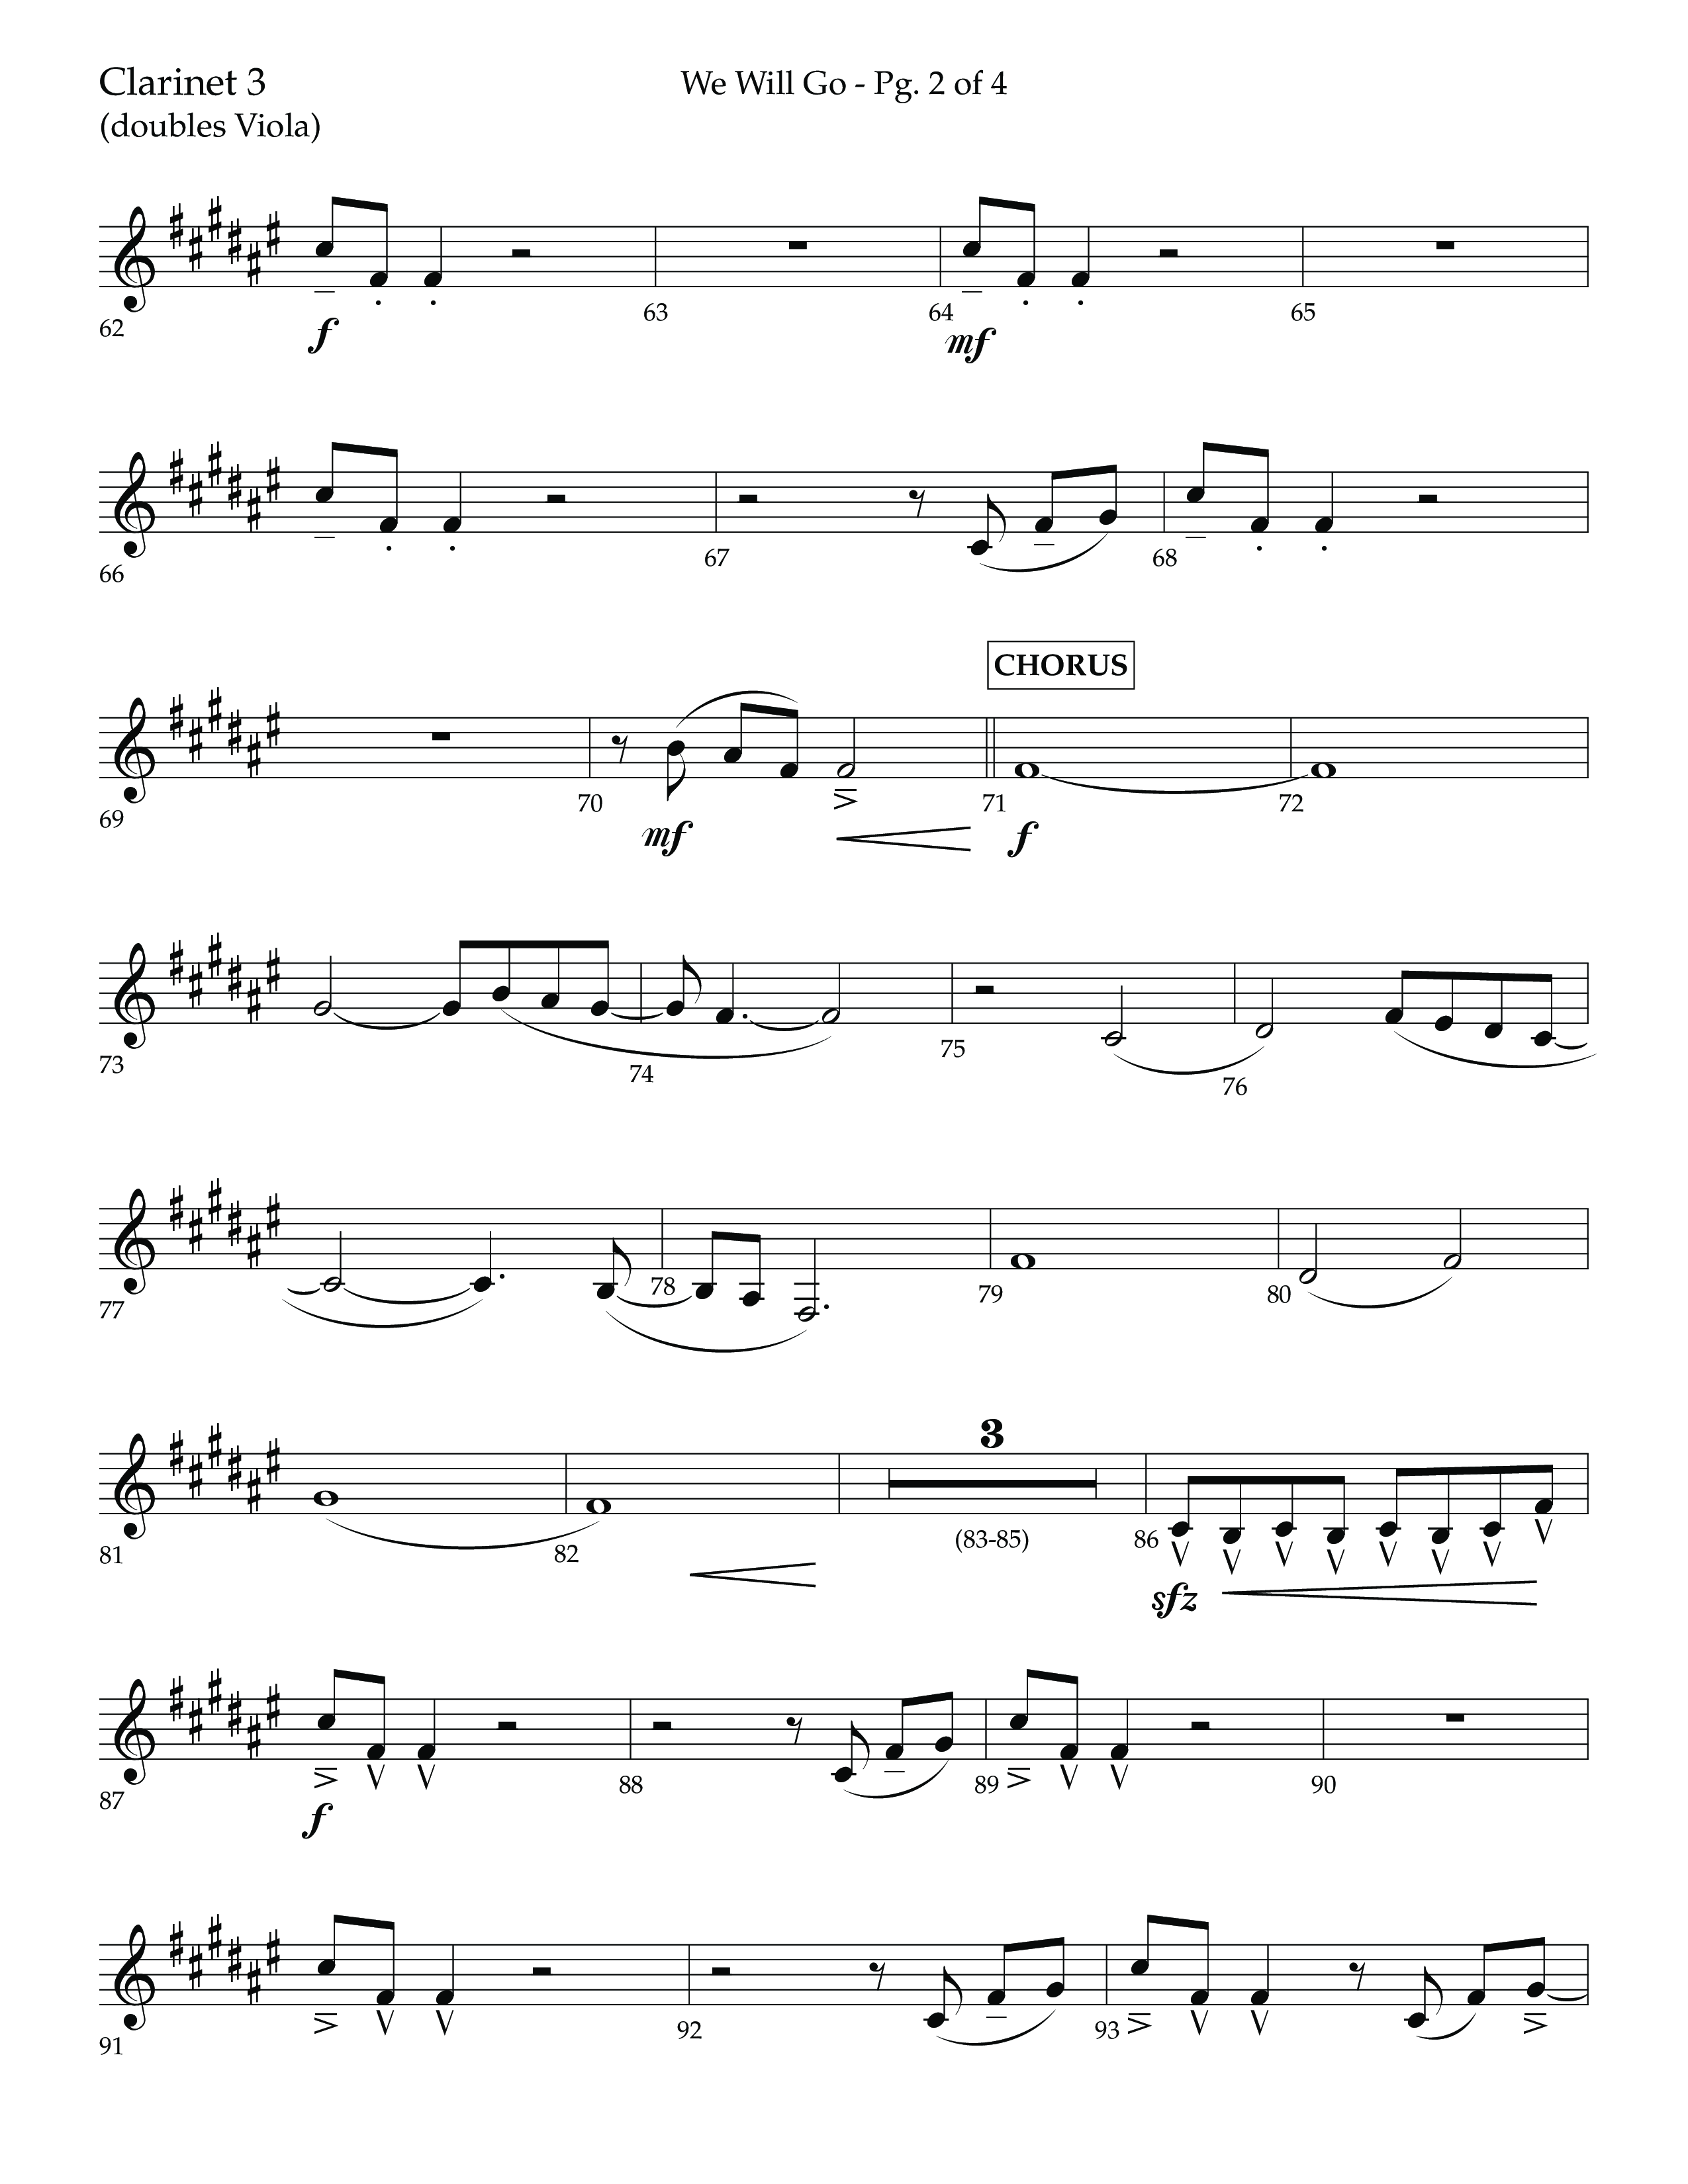 We Will Go (Choral Anthem SATB) Clarinet 3 (Lifeway Choral / Arr. Cliff Duren)